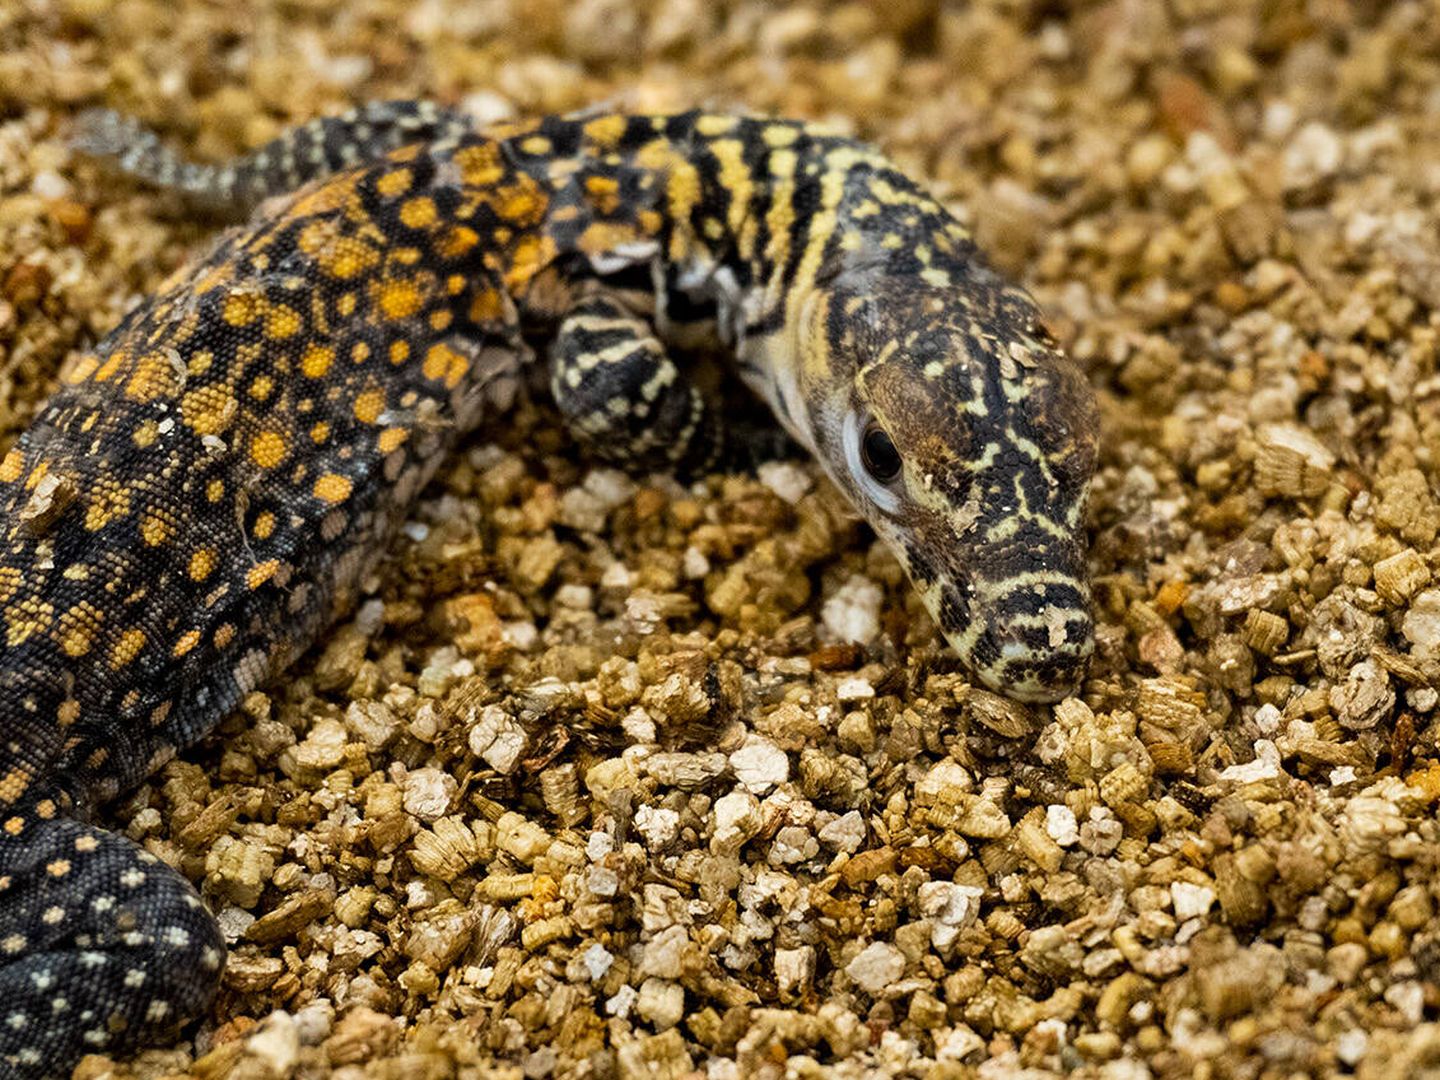 Una de las nuevas crías de dragón de Komodo. (Bioparc Fuengirola)